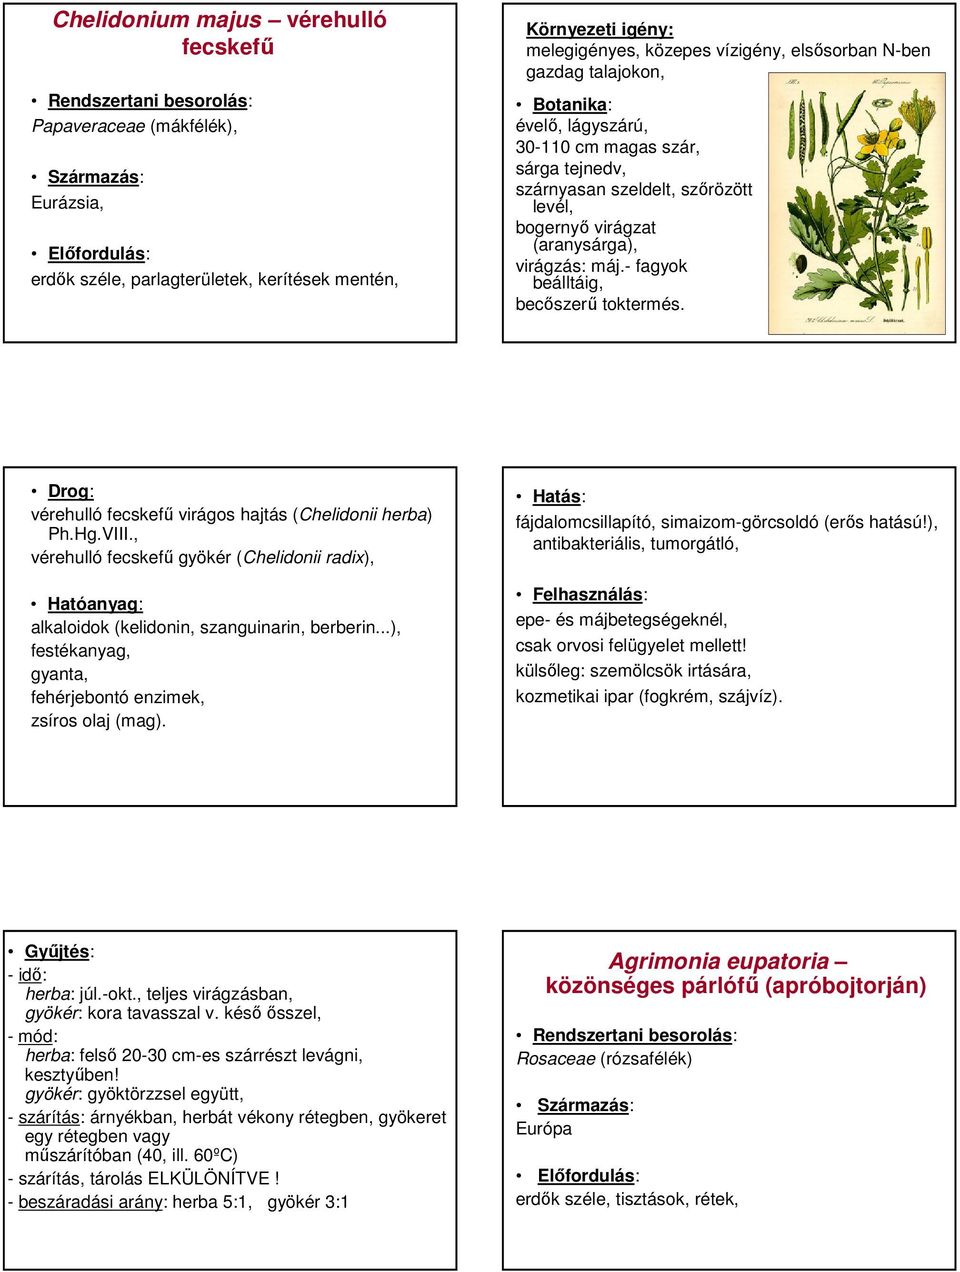 vérehulló fecskefő virágos hajtás (Chelidonii herba) Ph.Hg.VIII., vérehulló fecskefő gyökér (Chelidonii radix), alkaloidok (kelidonin, szanguinarin, berberin.